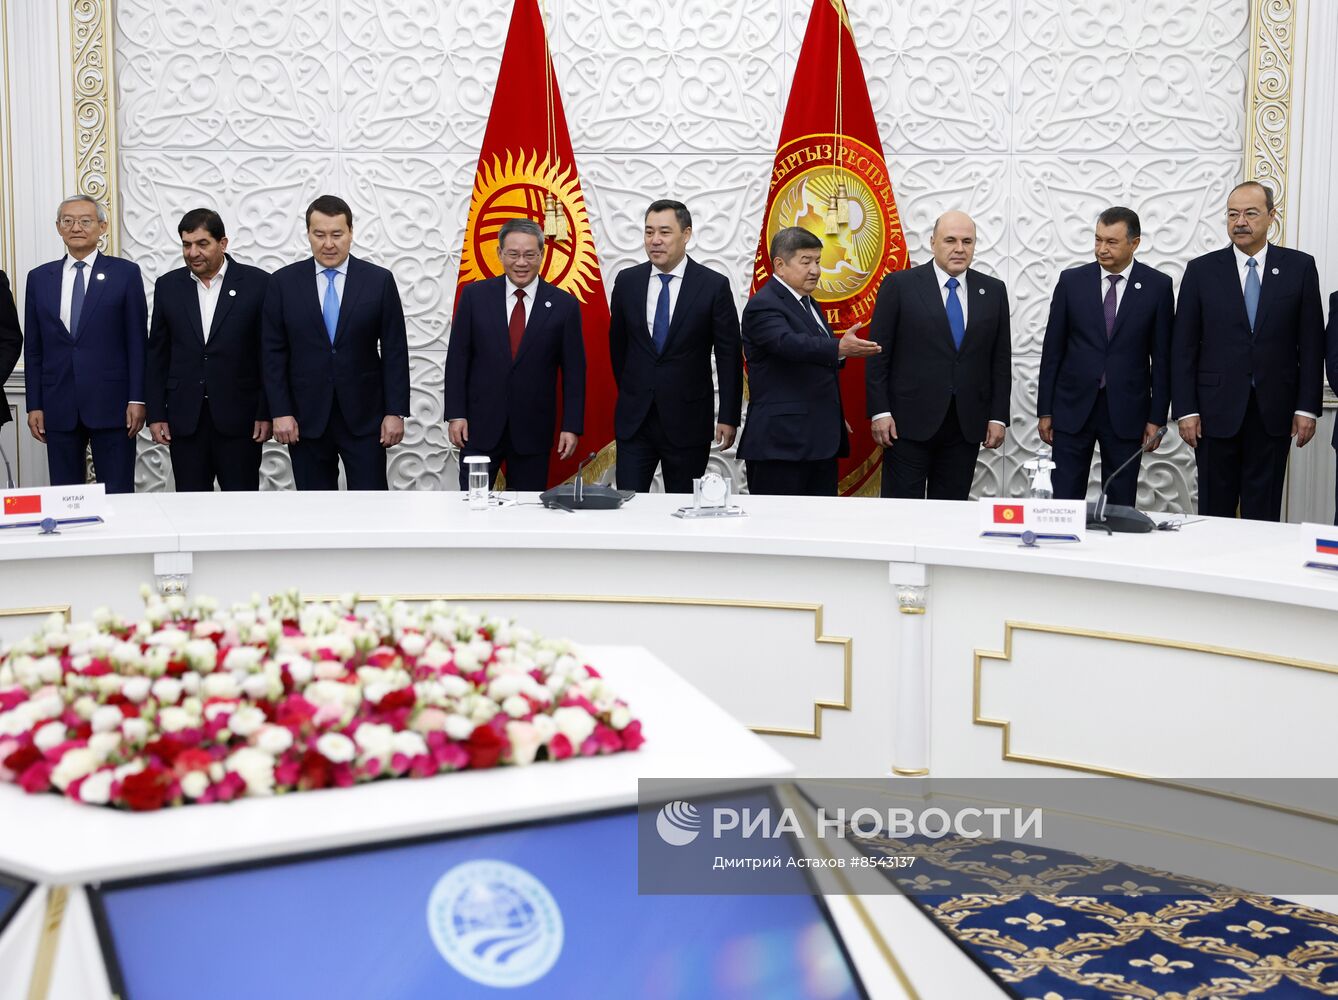 Премьер-министр РФ М. Мишустин принял участие в работе межправительственного совета стран ЕАЭС и Совета глав правительств СНГ и государств - членов ШОС в Бишкеке. День второй